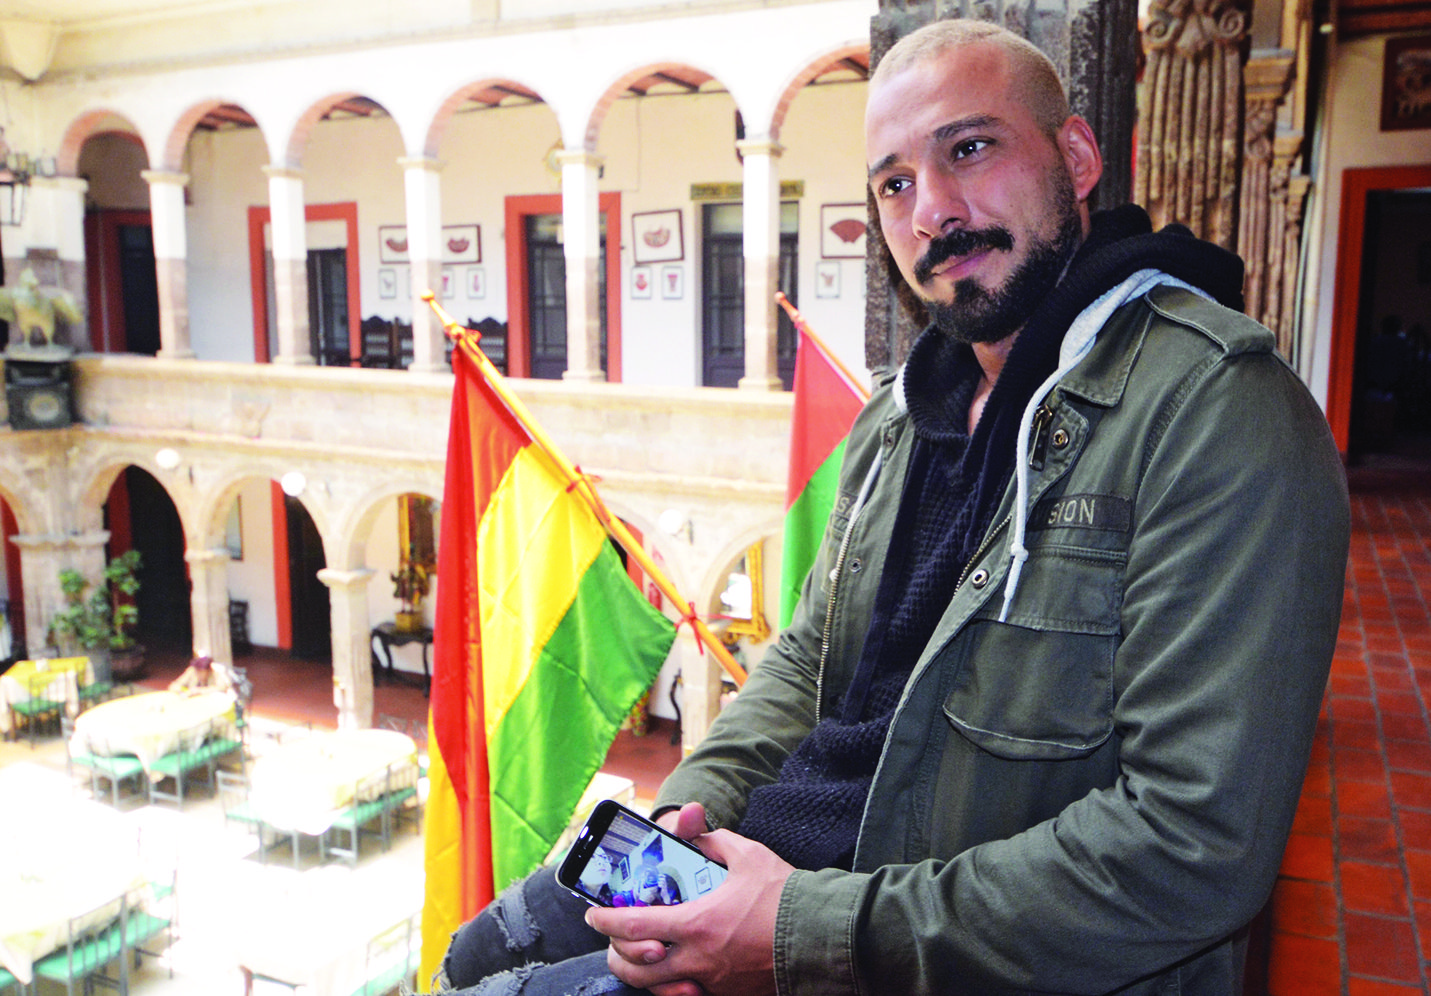 Bahman, careca e de barba e bigode preto, está sentado num banco próximo a duas bandeiras, ele usa jaqueta verde e segura o celular nas mãos, em cima do colo